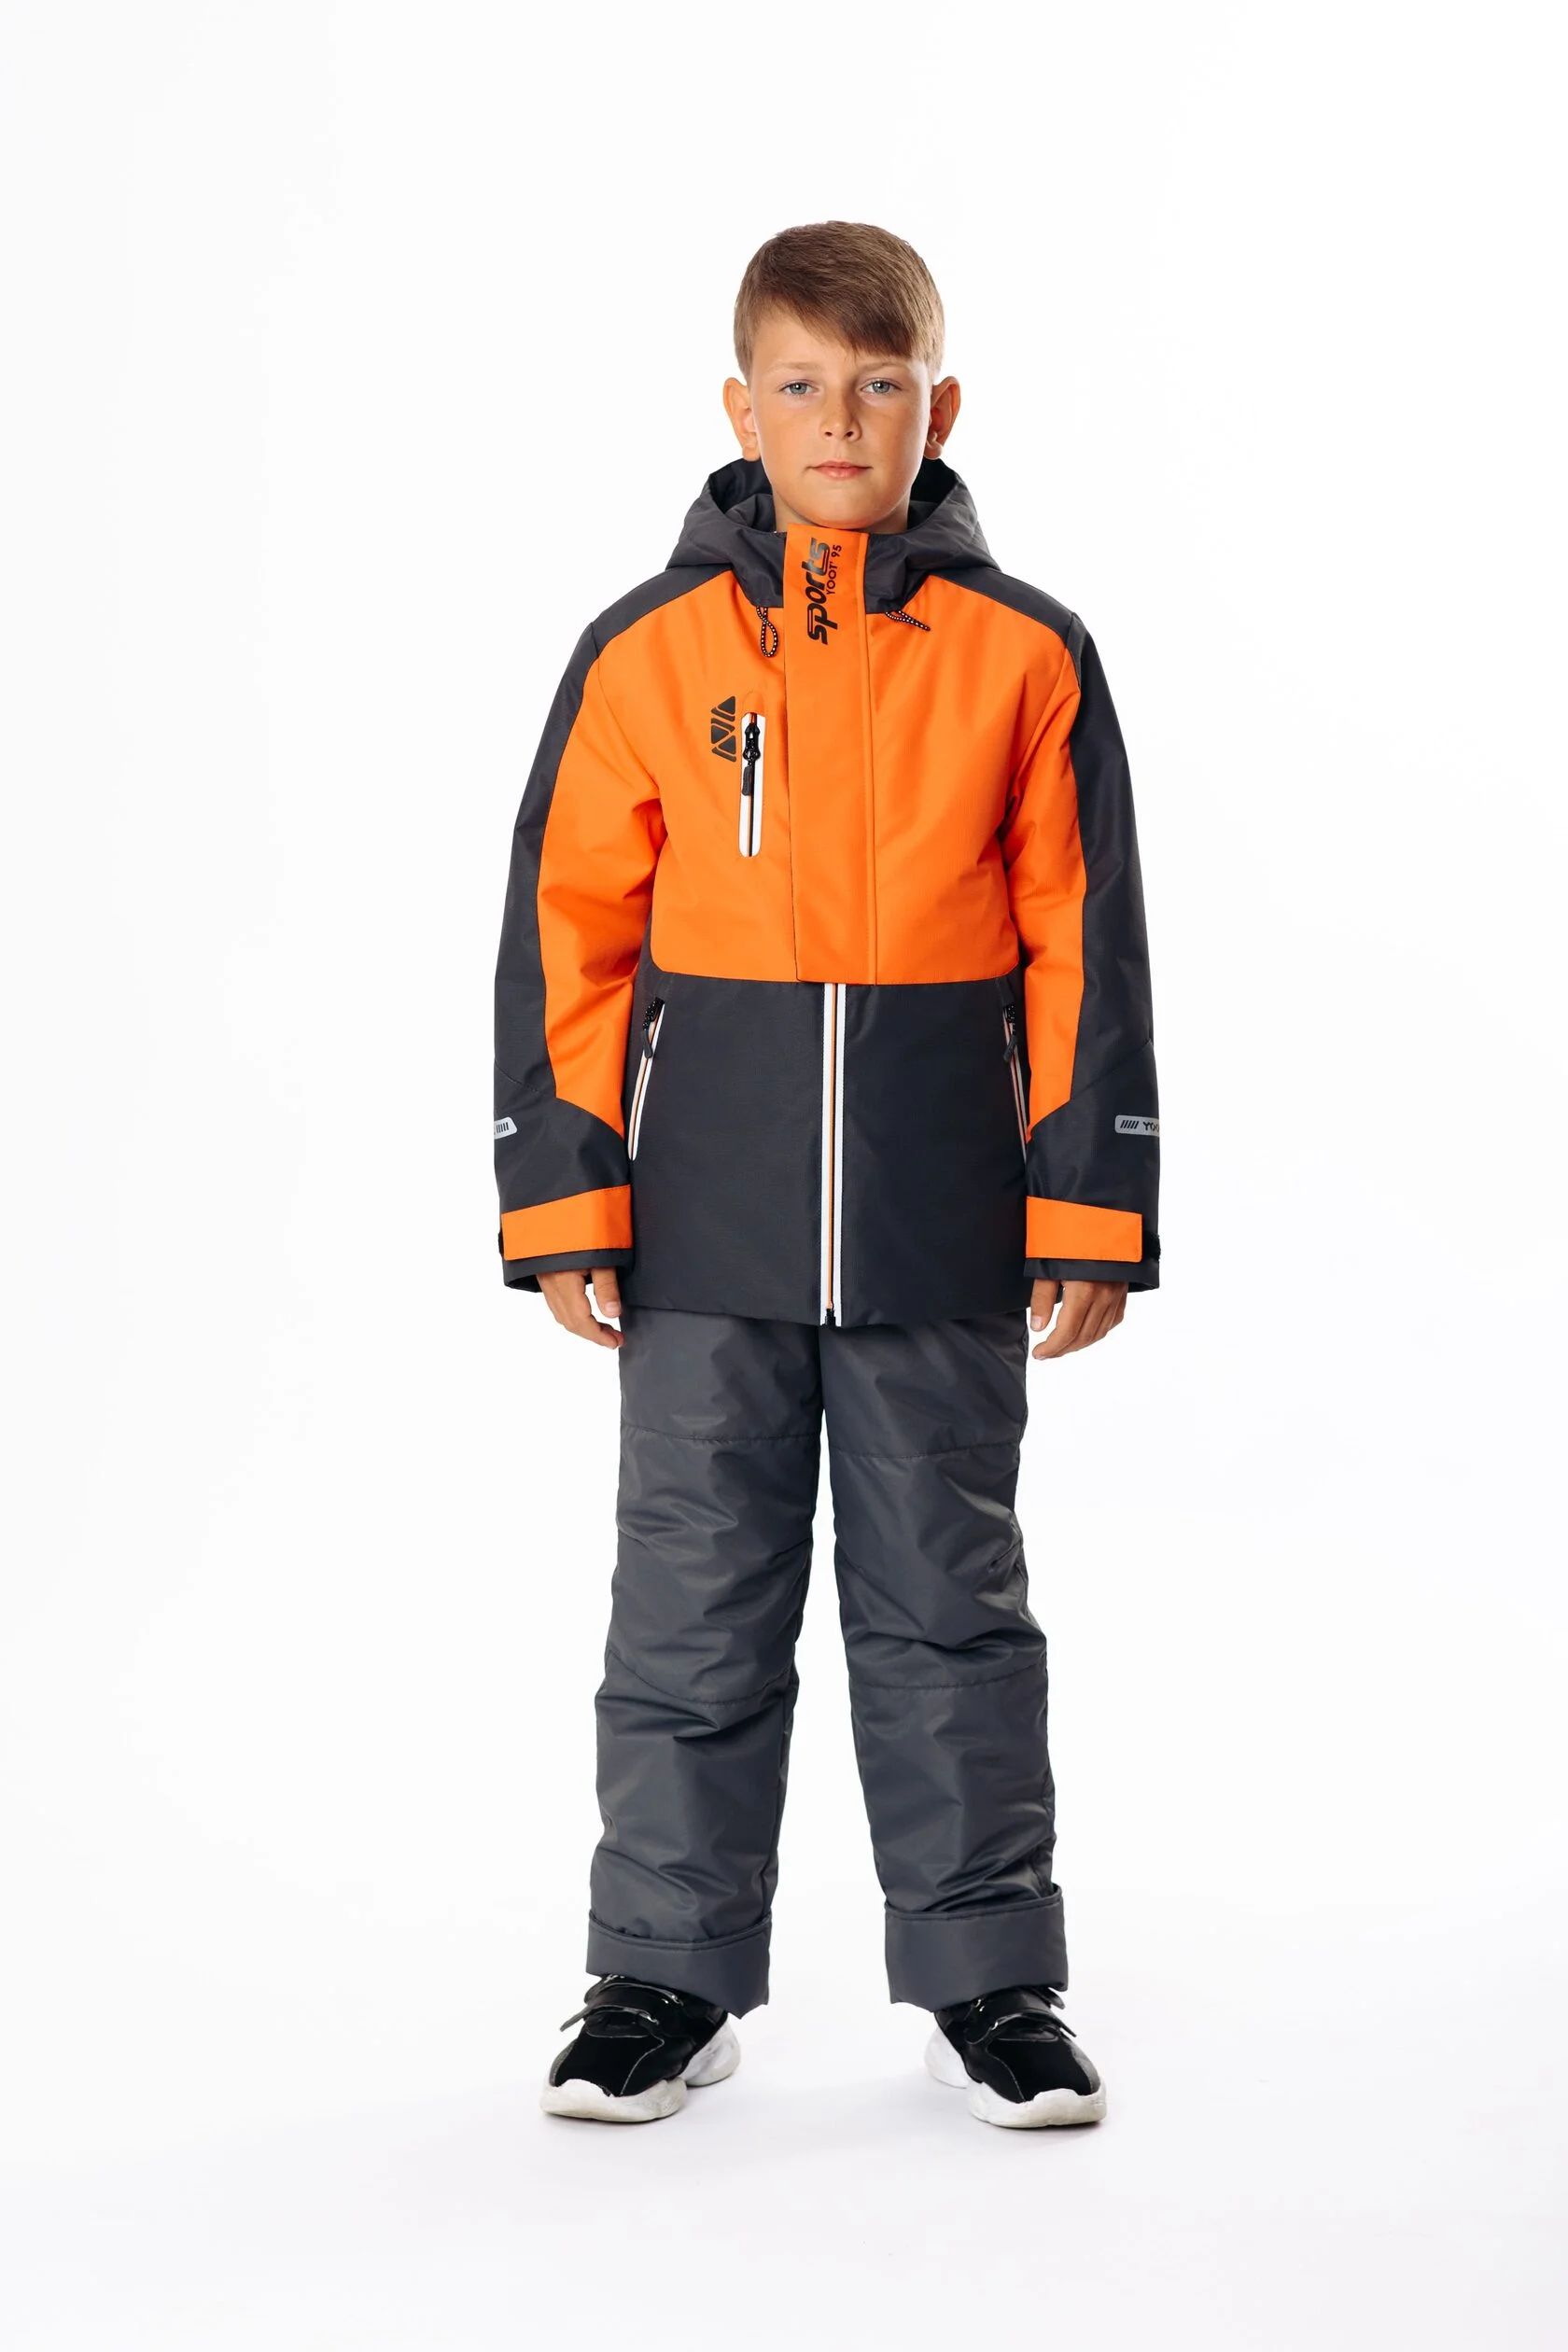 Комплект верхней одежды Yoot 2505 оранжевый, 116 комплект верхней одежды kvartet 661 м оранжевый 92